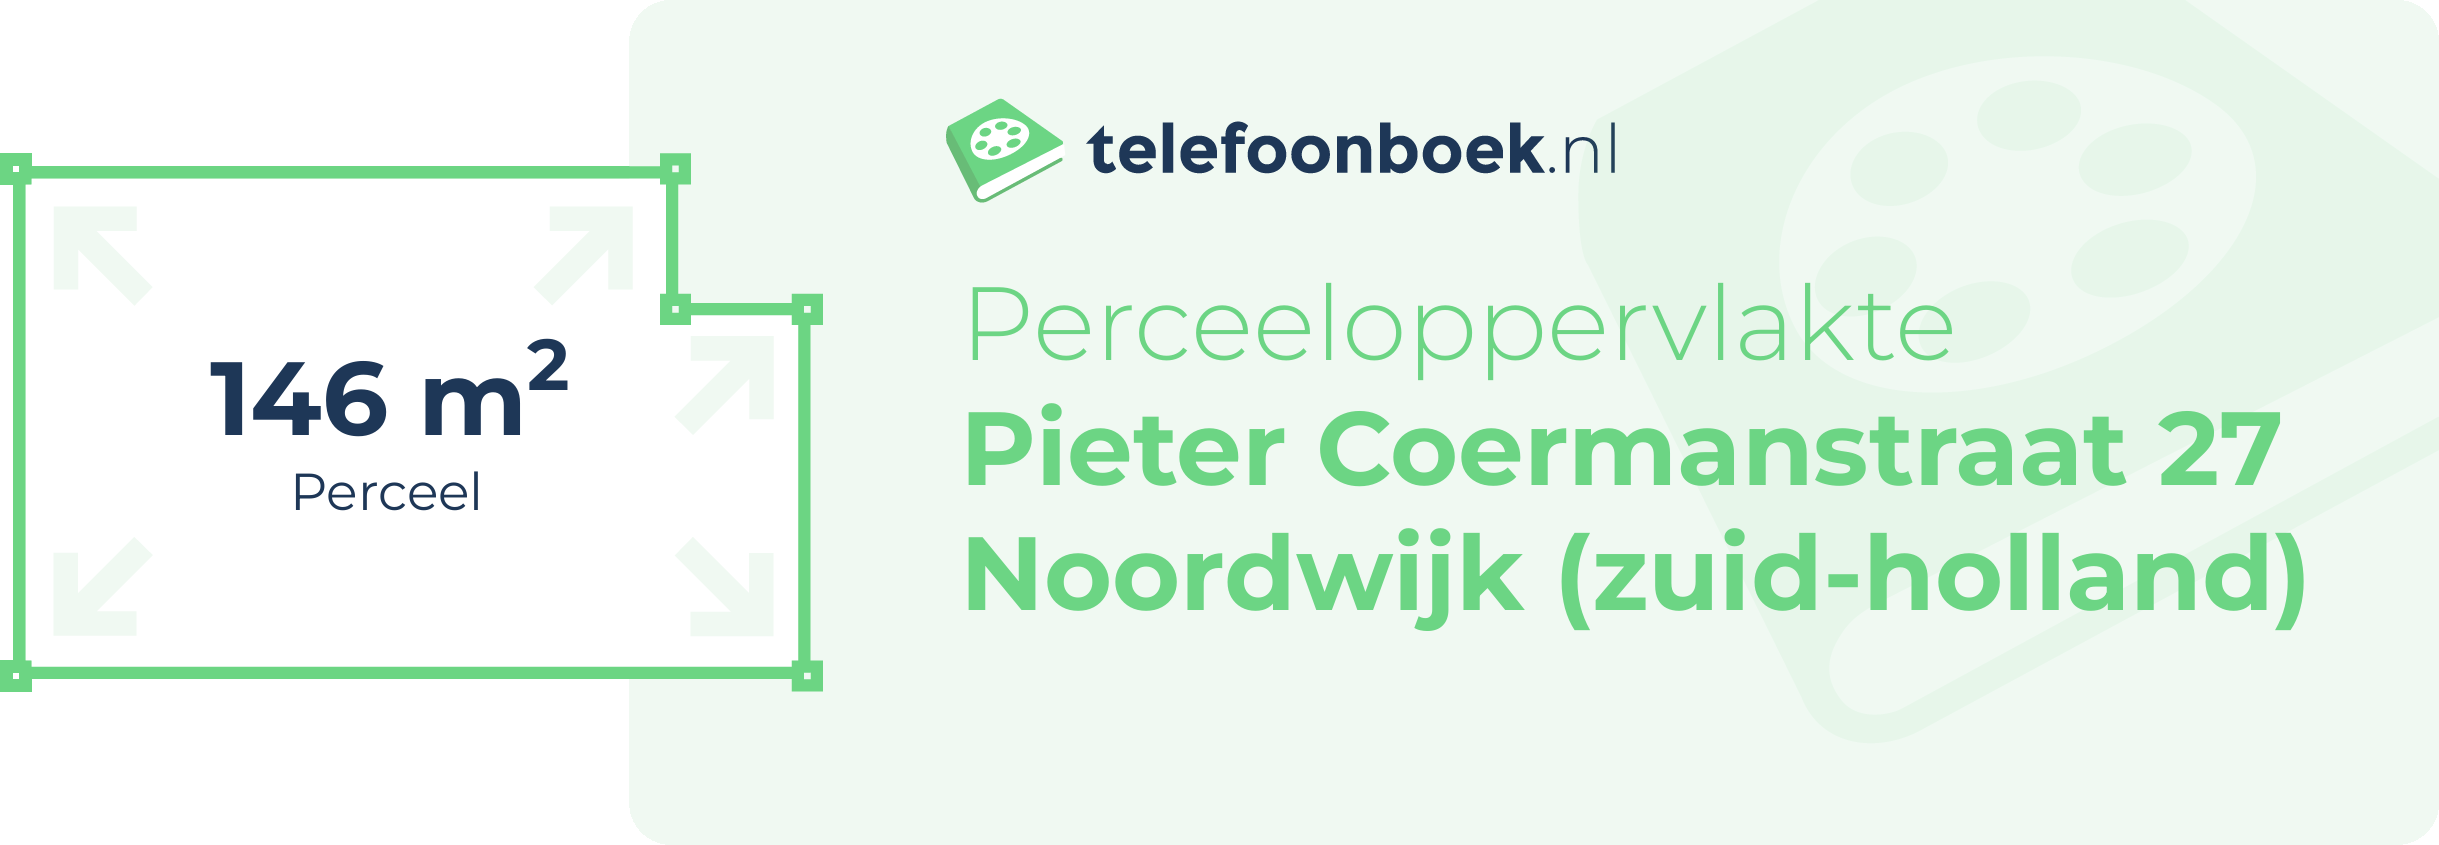 Perceeloppervlakte Pieter Coermanstraat 27 Noordwijk (Zuid-Holland)